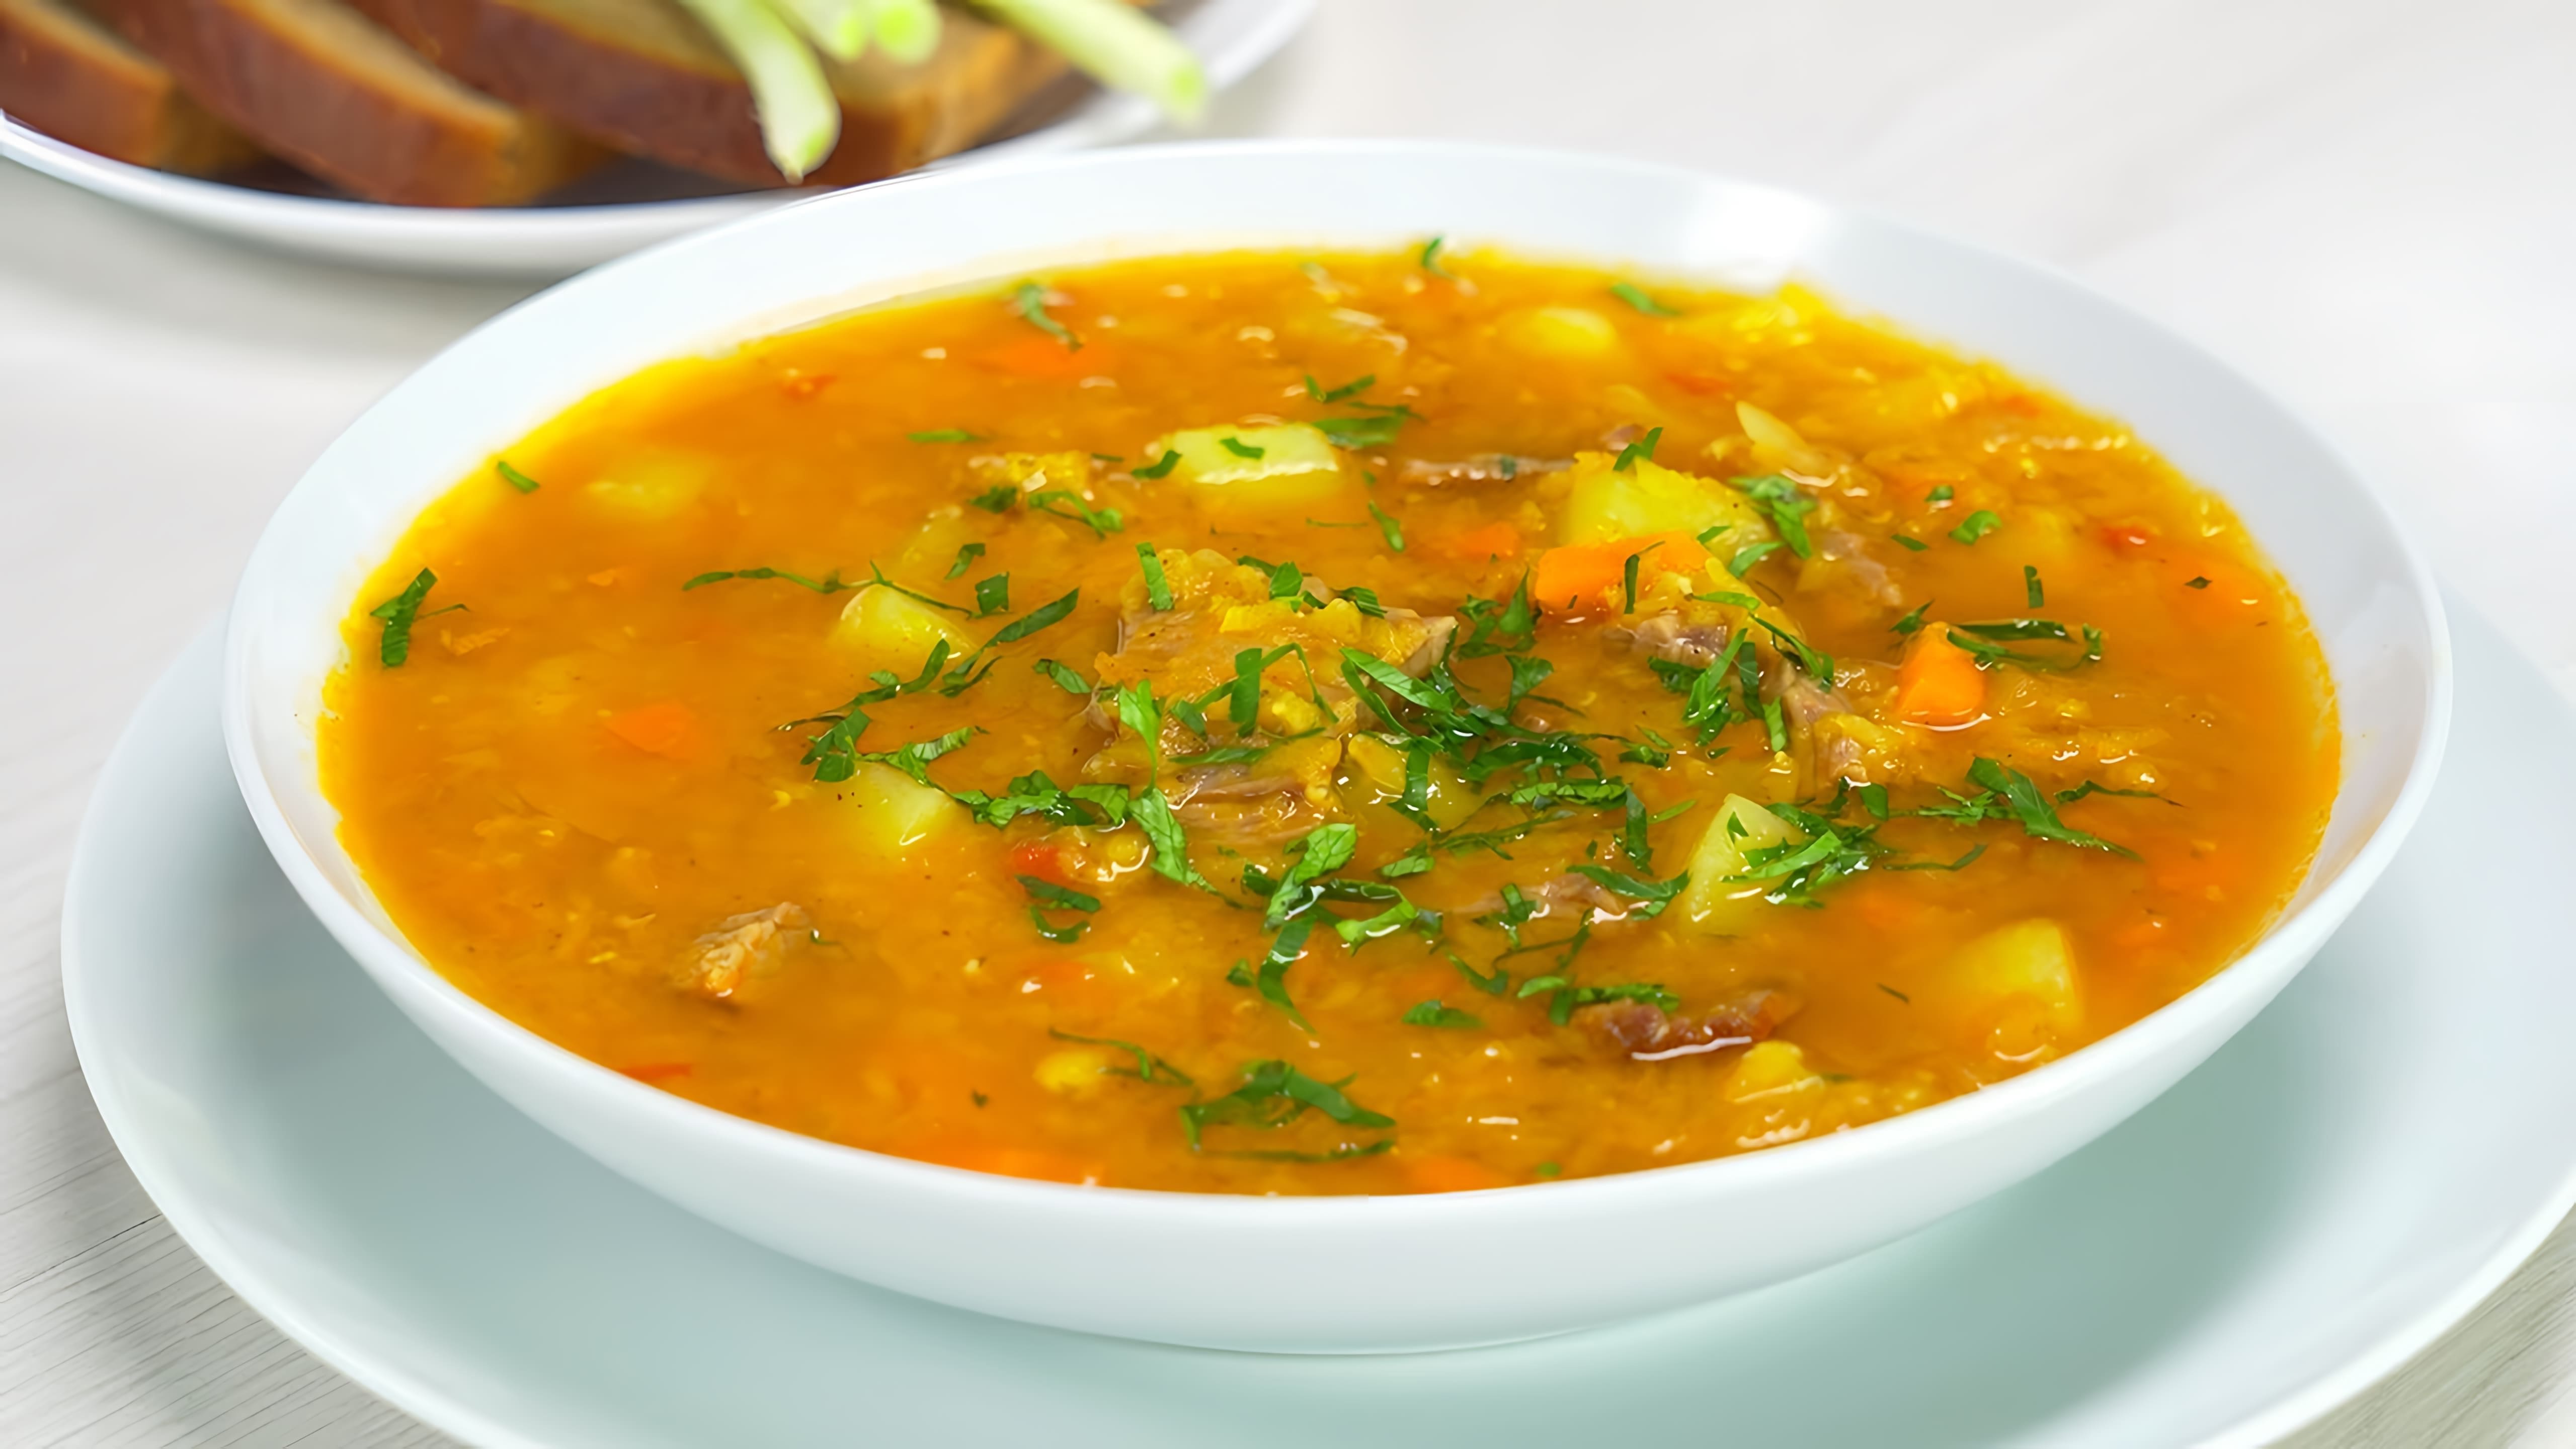 В этом видео демонстрируется рецепт приготовления вкусного чечевичного супа